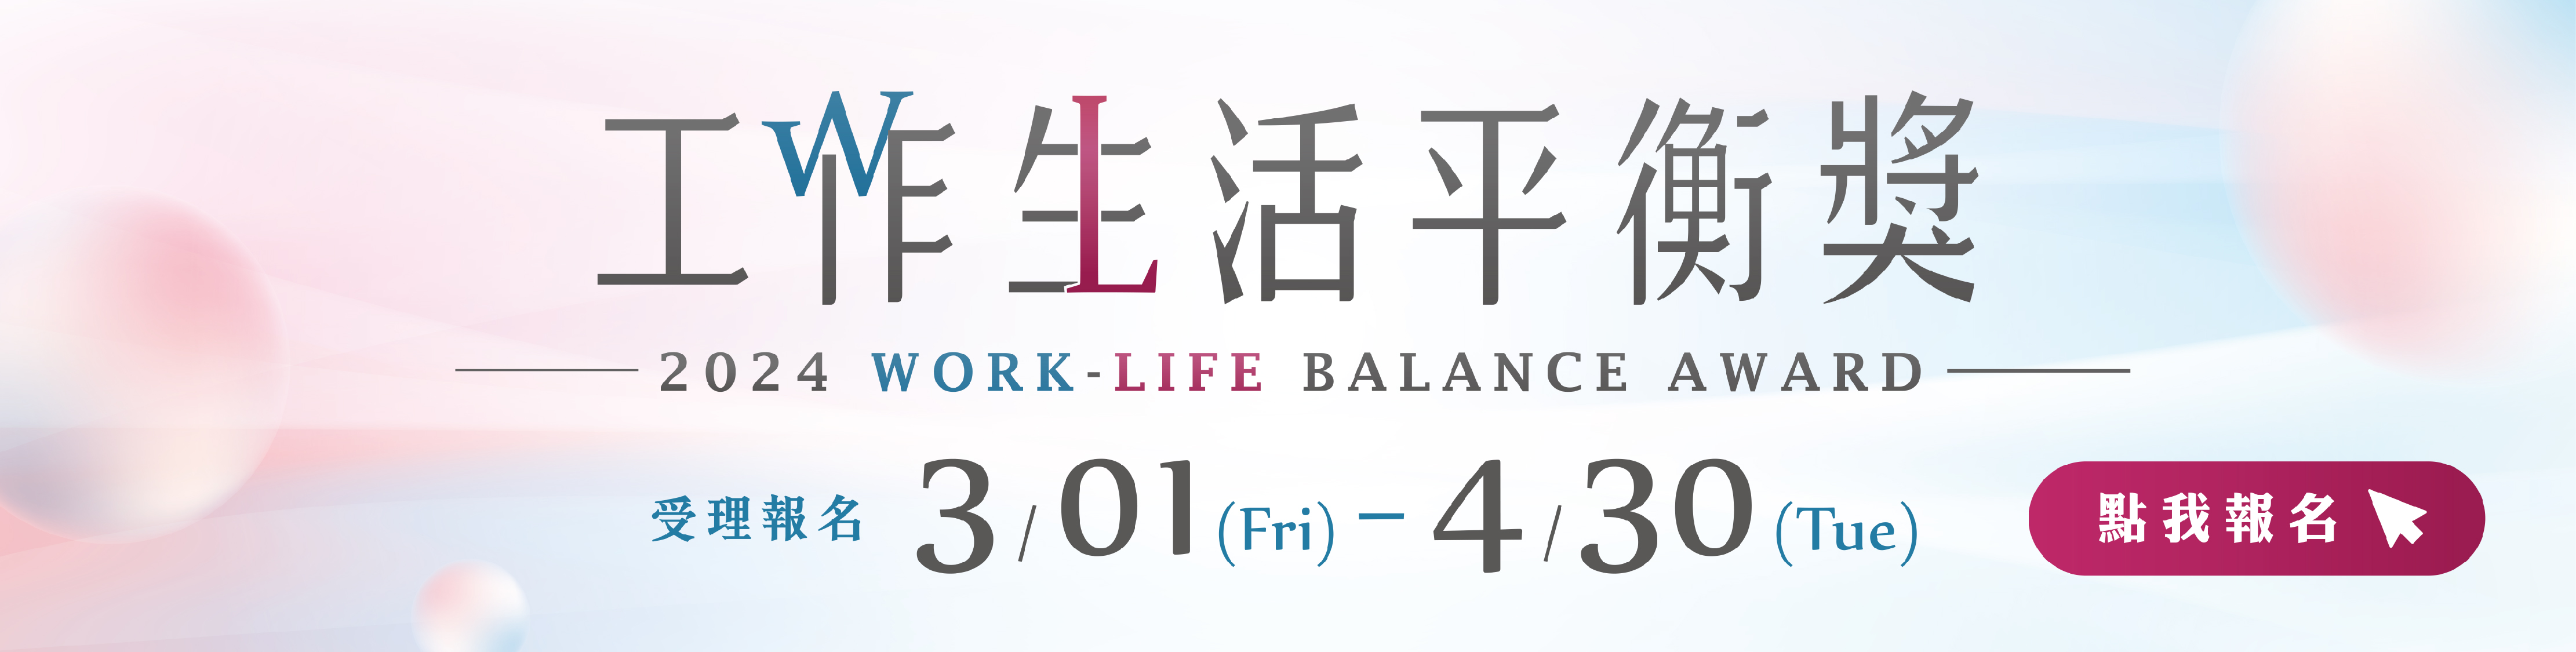 工作生活平衡網-形象廣告1